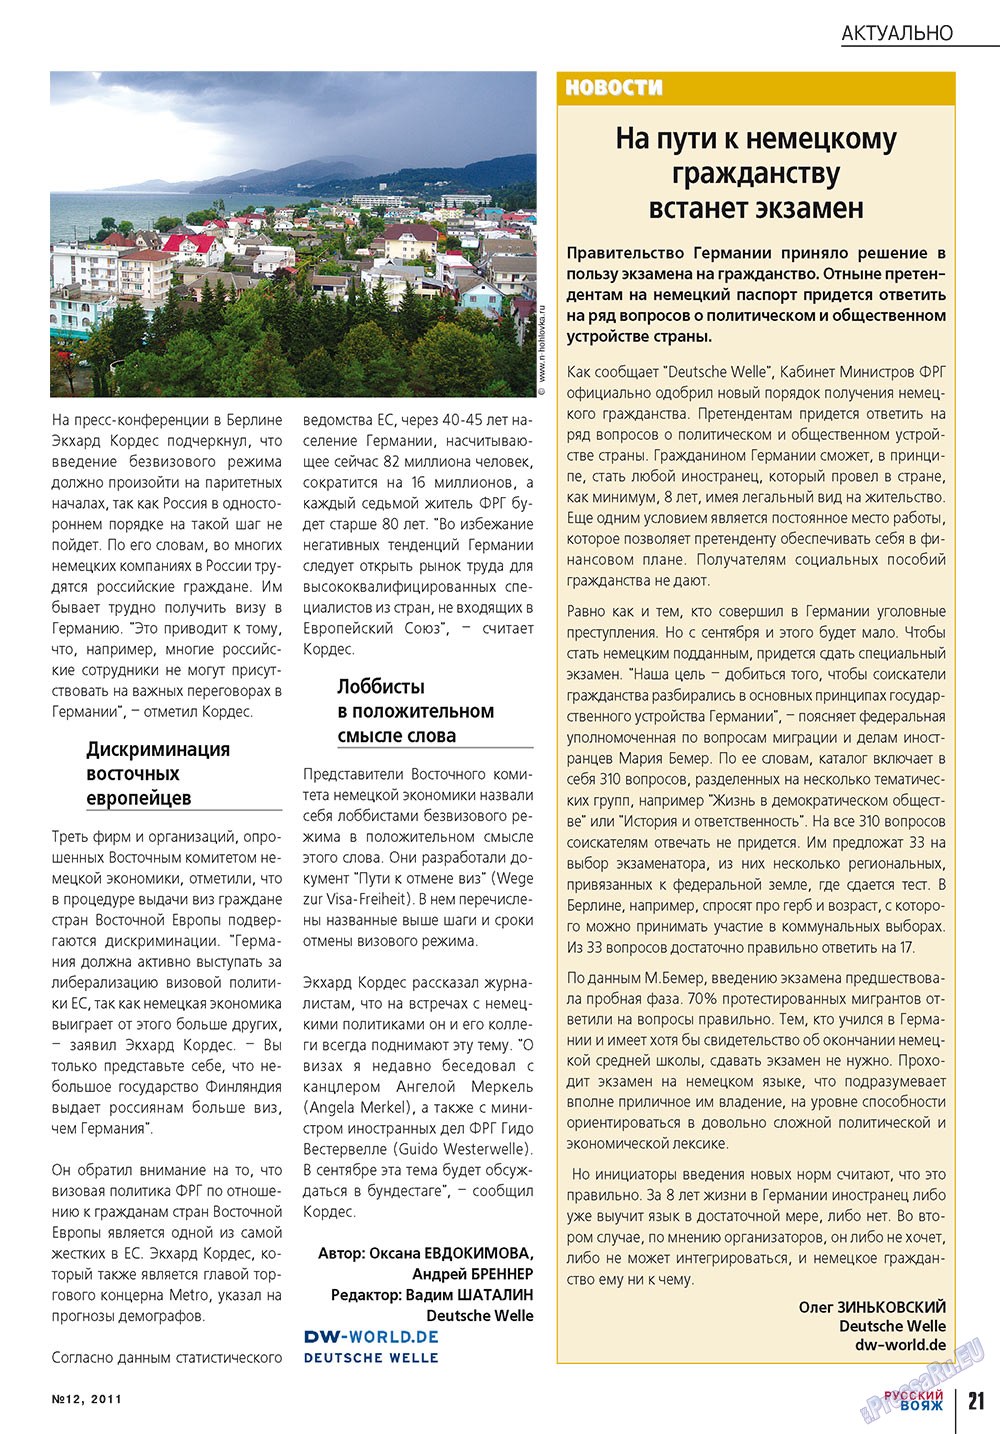 Русский вояж, журнал. 2011 №12 стр.21